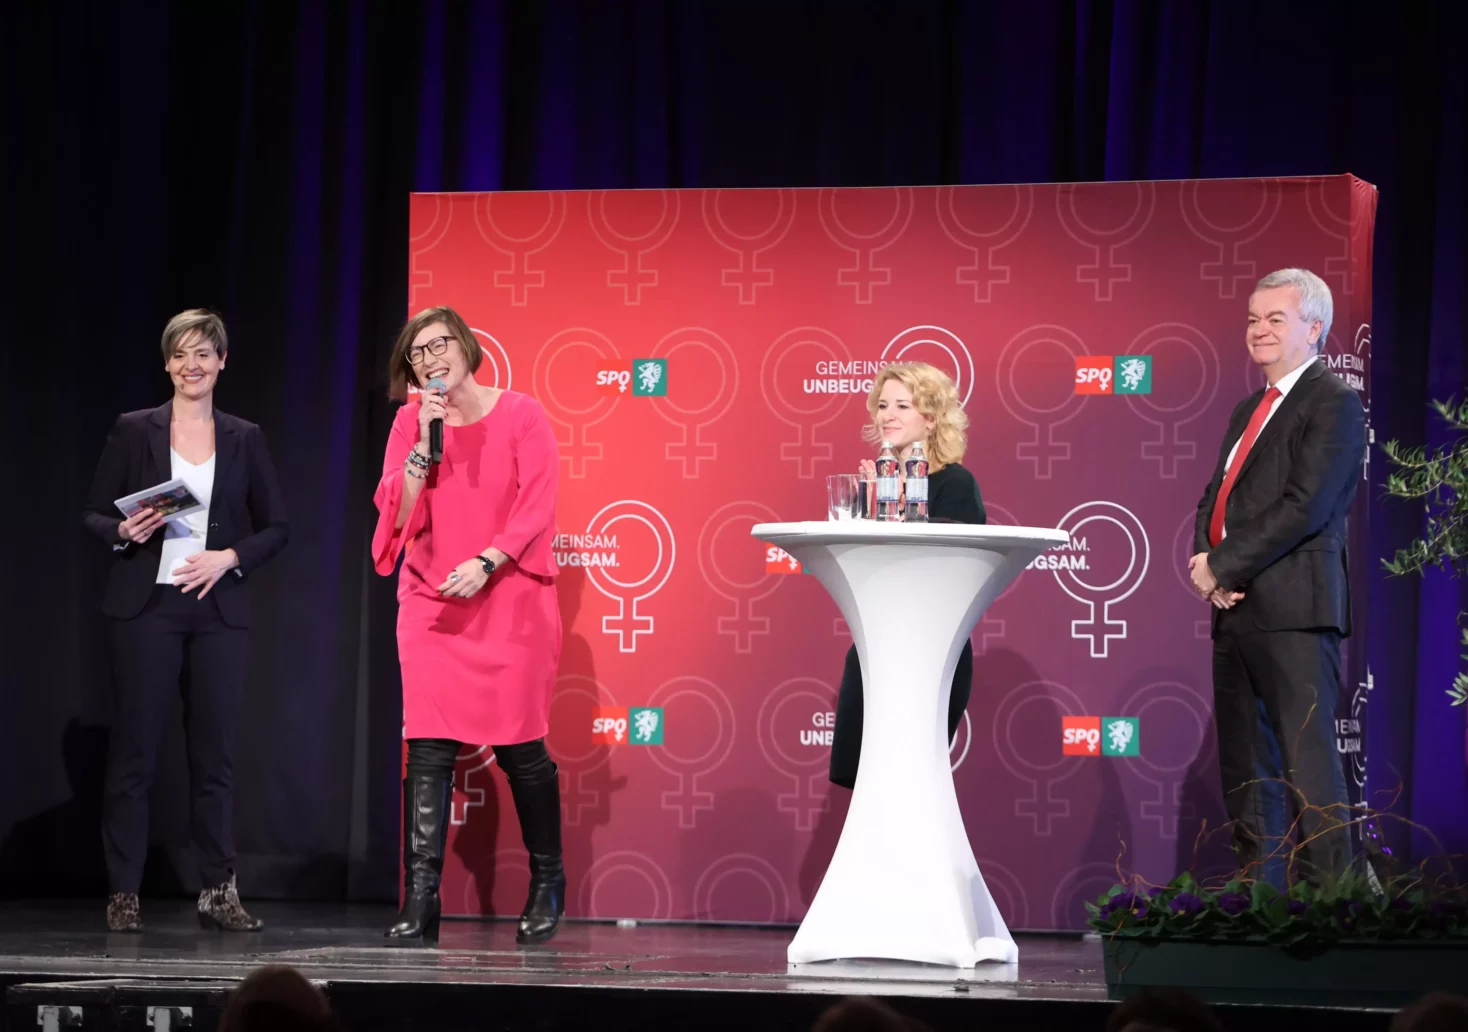 Foto in Beitrag von 5min.at: Zu sehen sind drei Frauen und SPÖ-Steiermark-Chef Anton Lang.